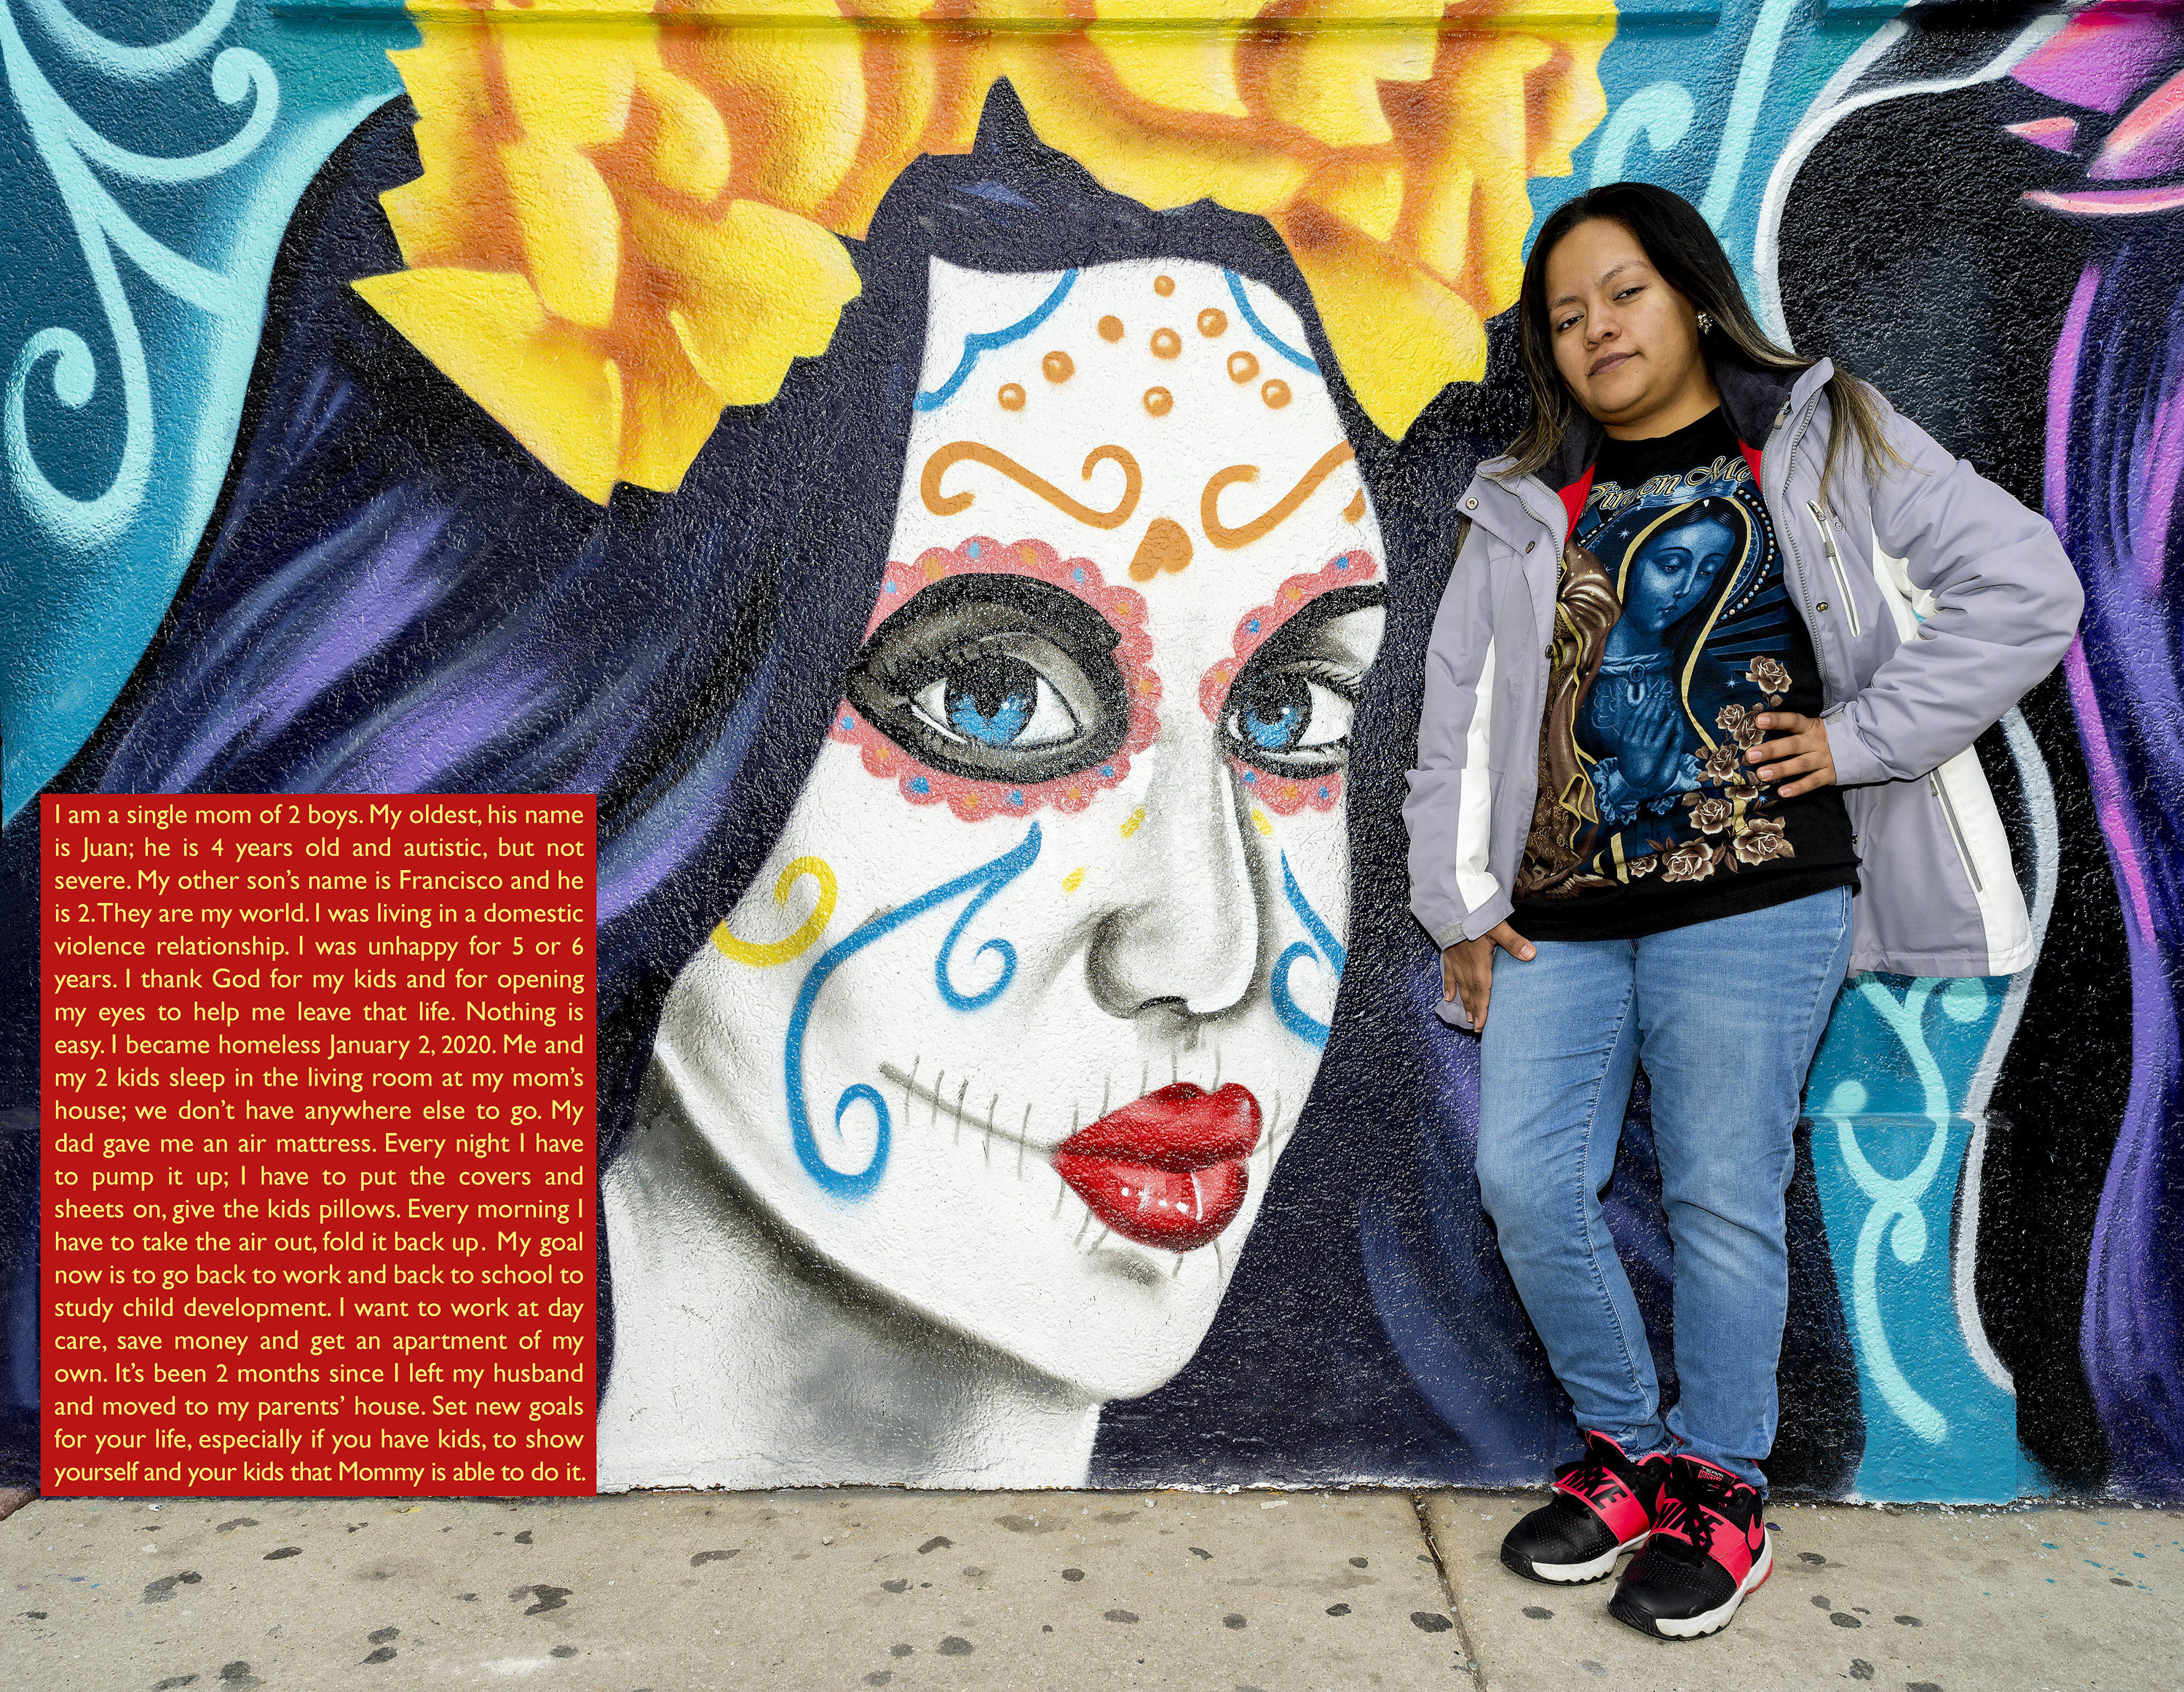 A woman leans against a mural